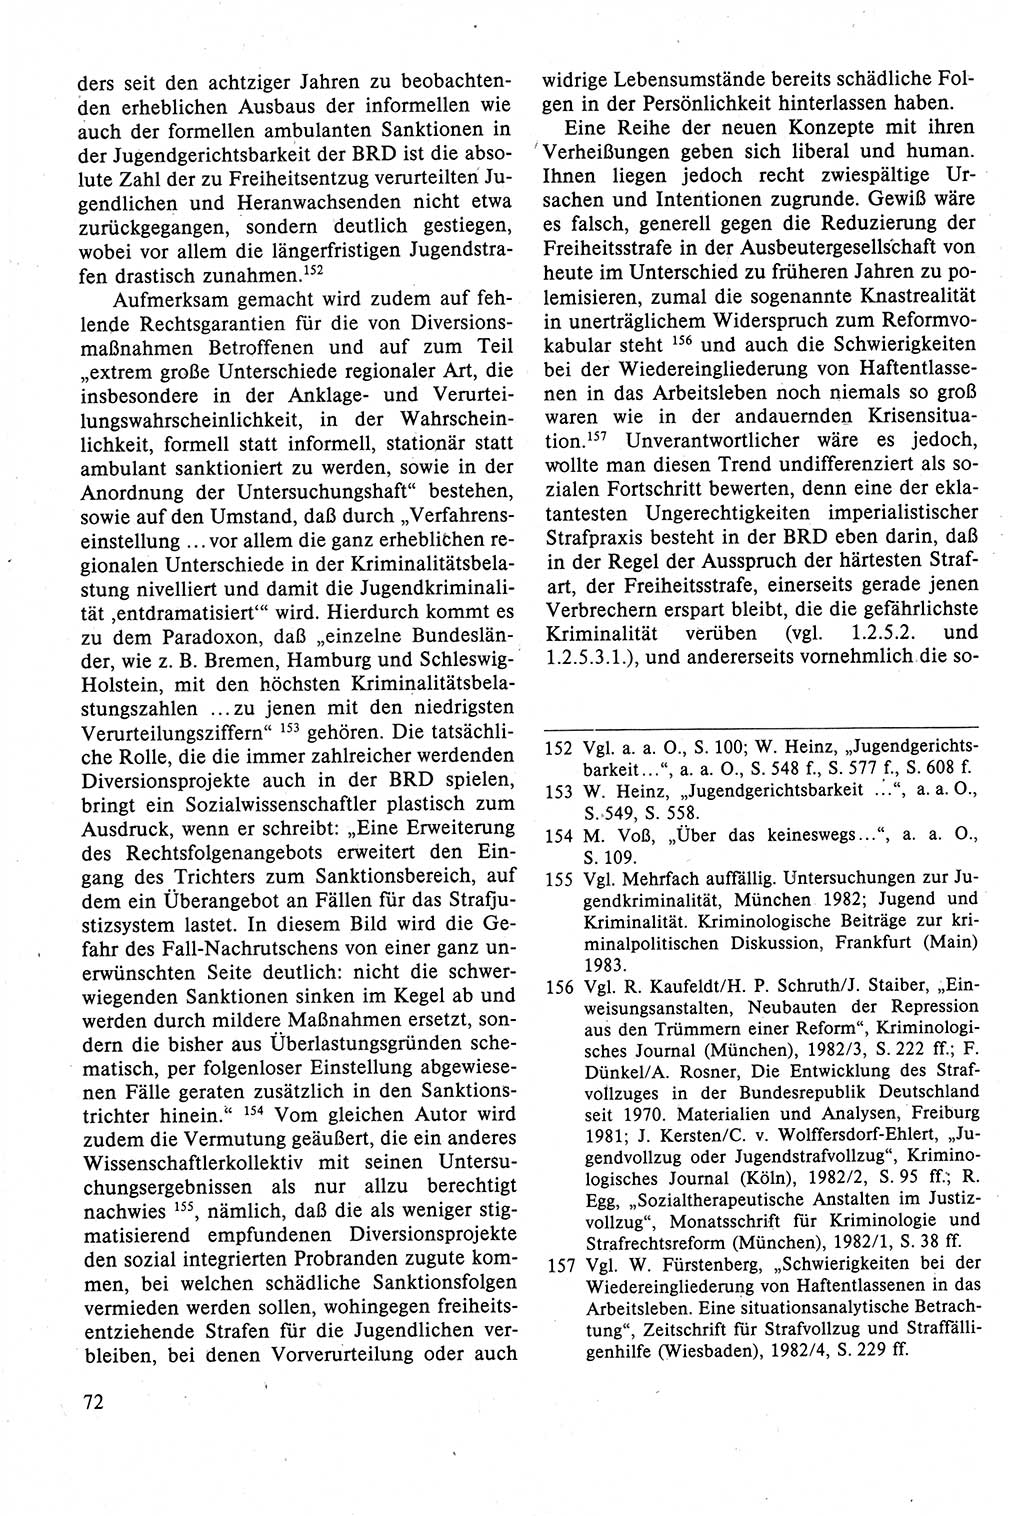 Strafrecht der DDR (Deutsche Demokratische Republik), Lehrbuch 1988, Seite 72 (Strafr. DDR Lb. 1988, S. 72)